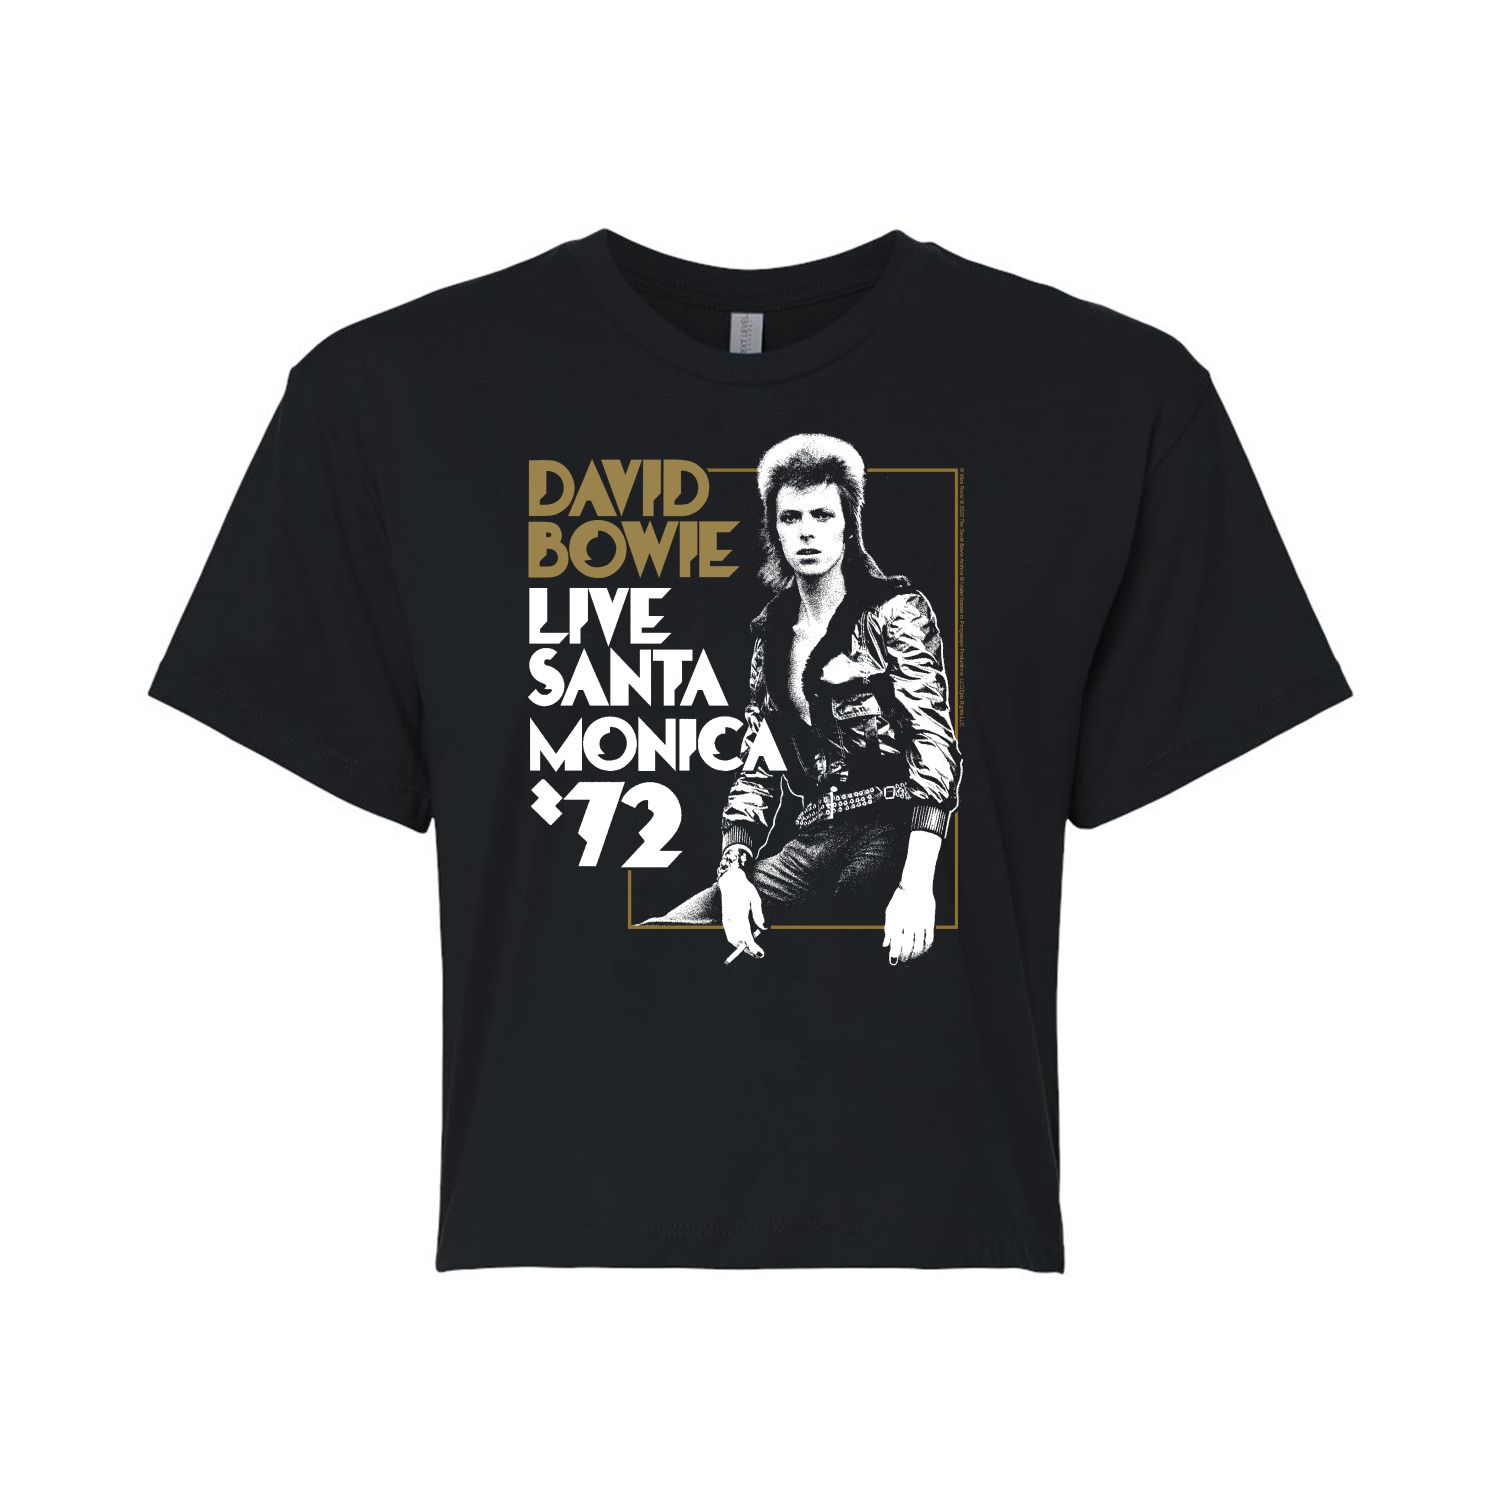 Укороченная футболка David Bowie Santa Monica для юниоров Licensed Character david bowie live santa monica 72